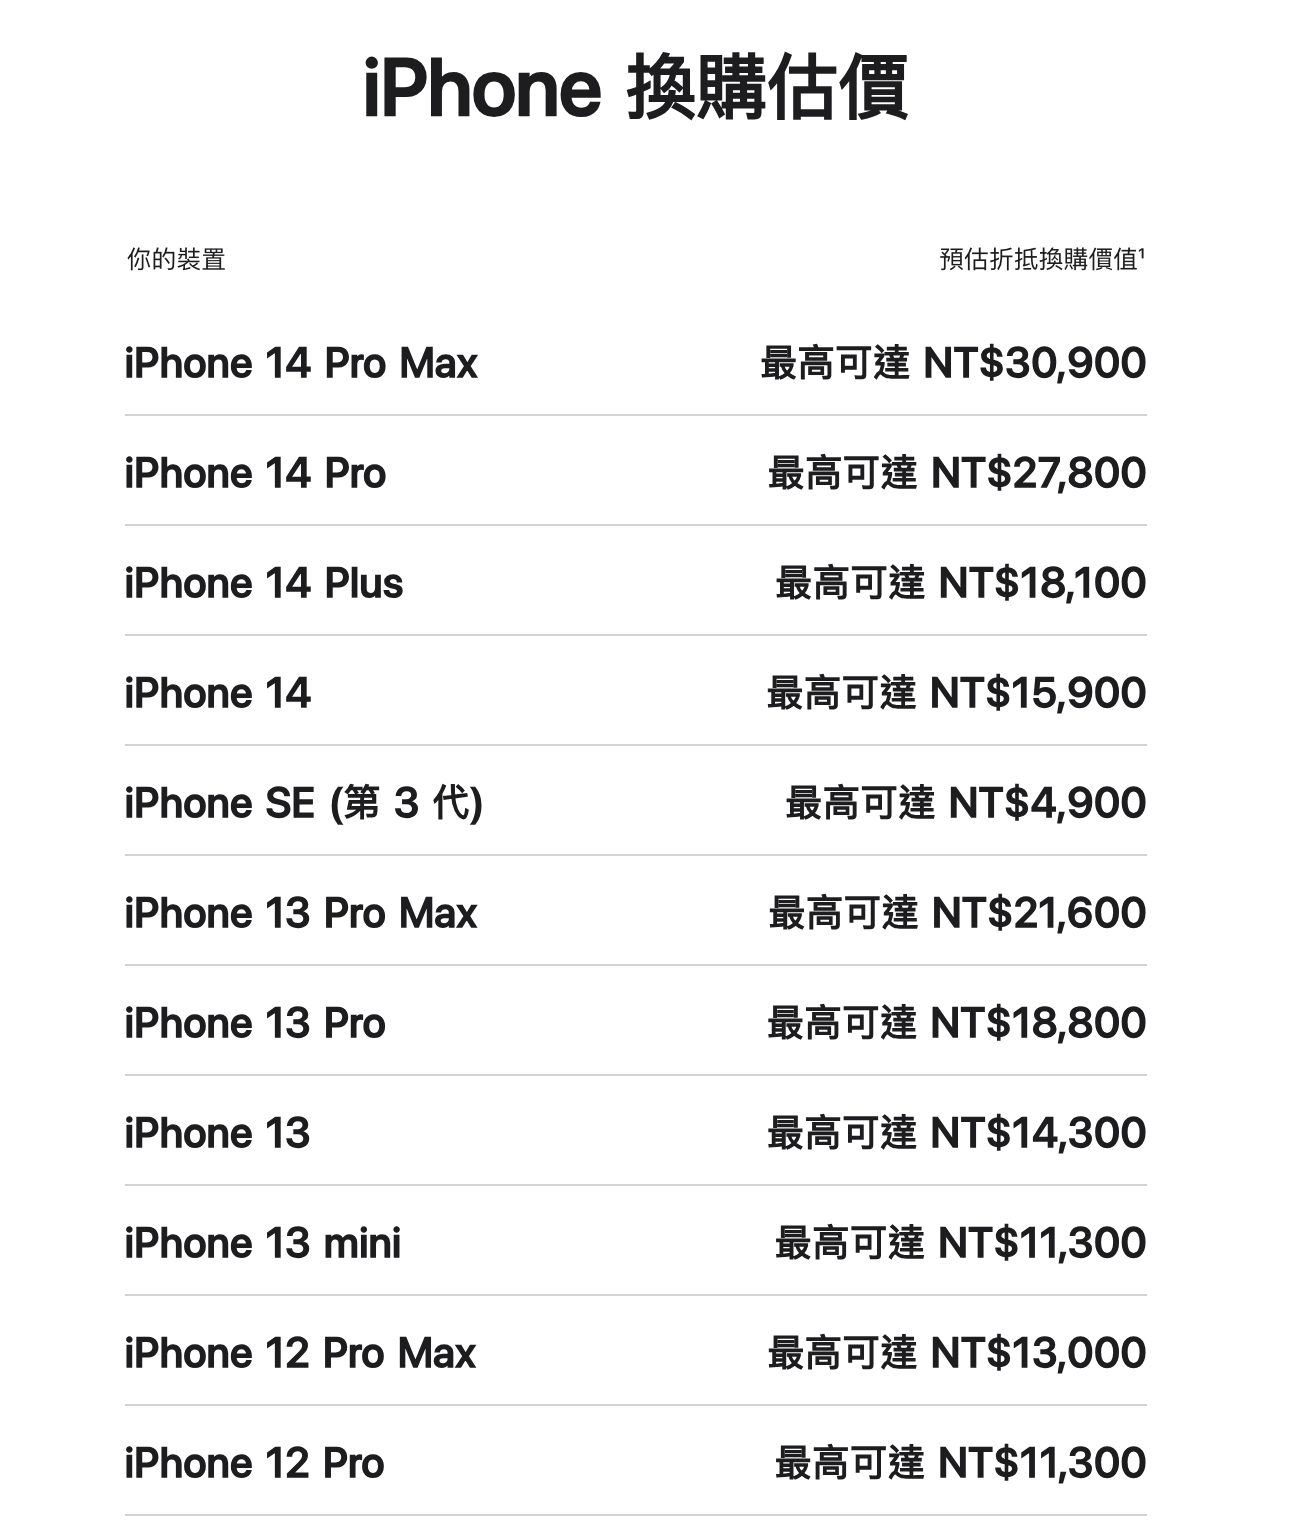 iPhone 14 系列的最高回收價值可以達到 NT$30,900 元。